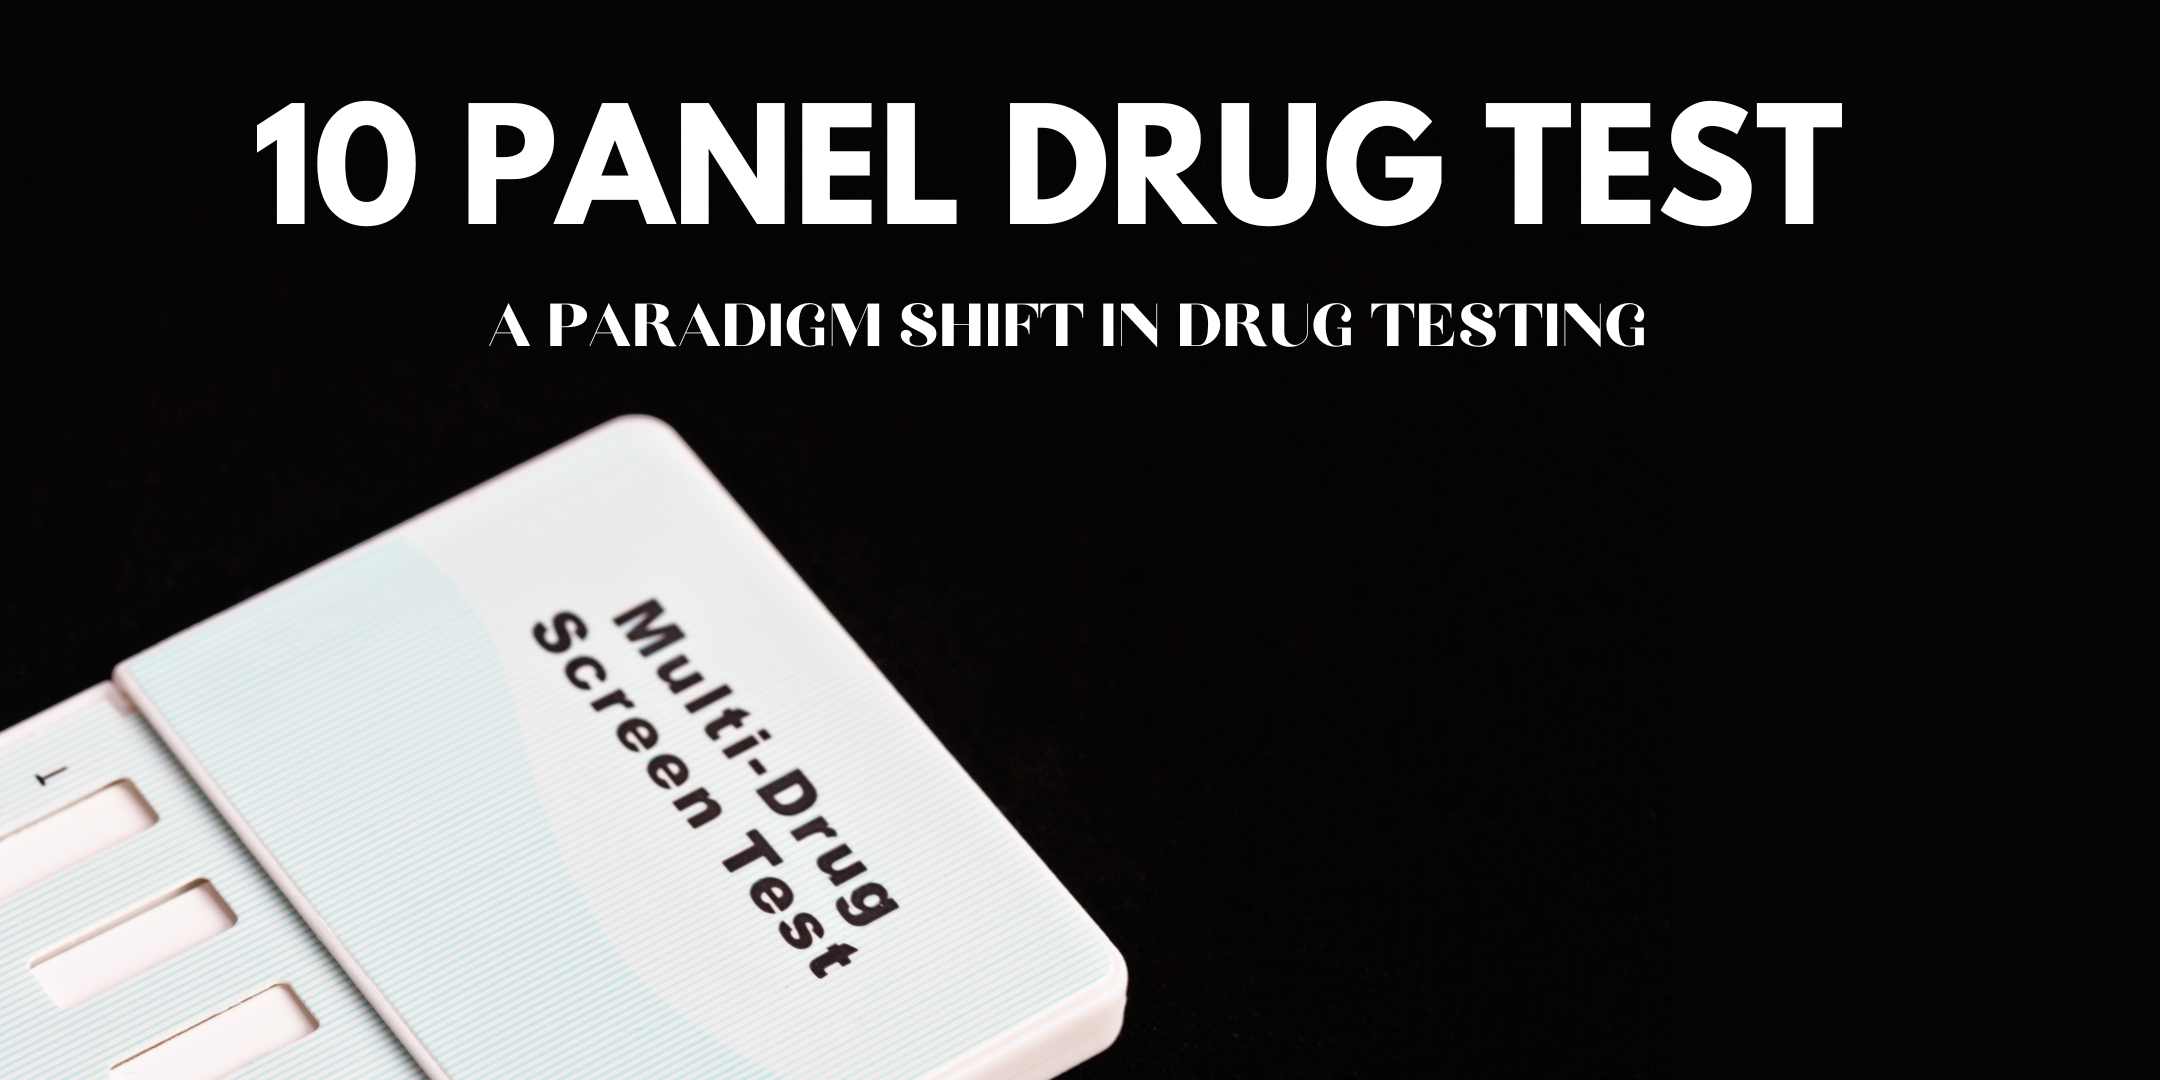 10 Panel Drug Test - A Paradigm Shift In Drug Testing